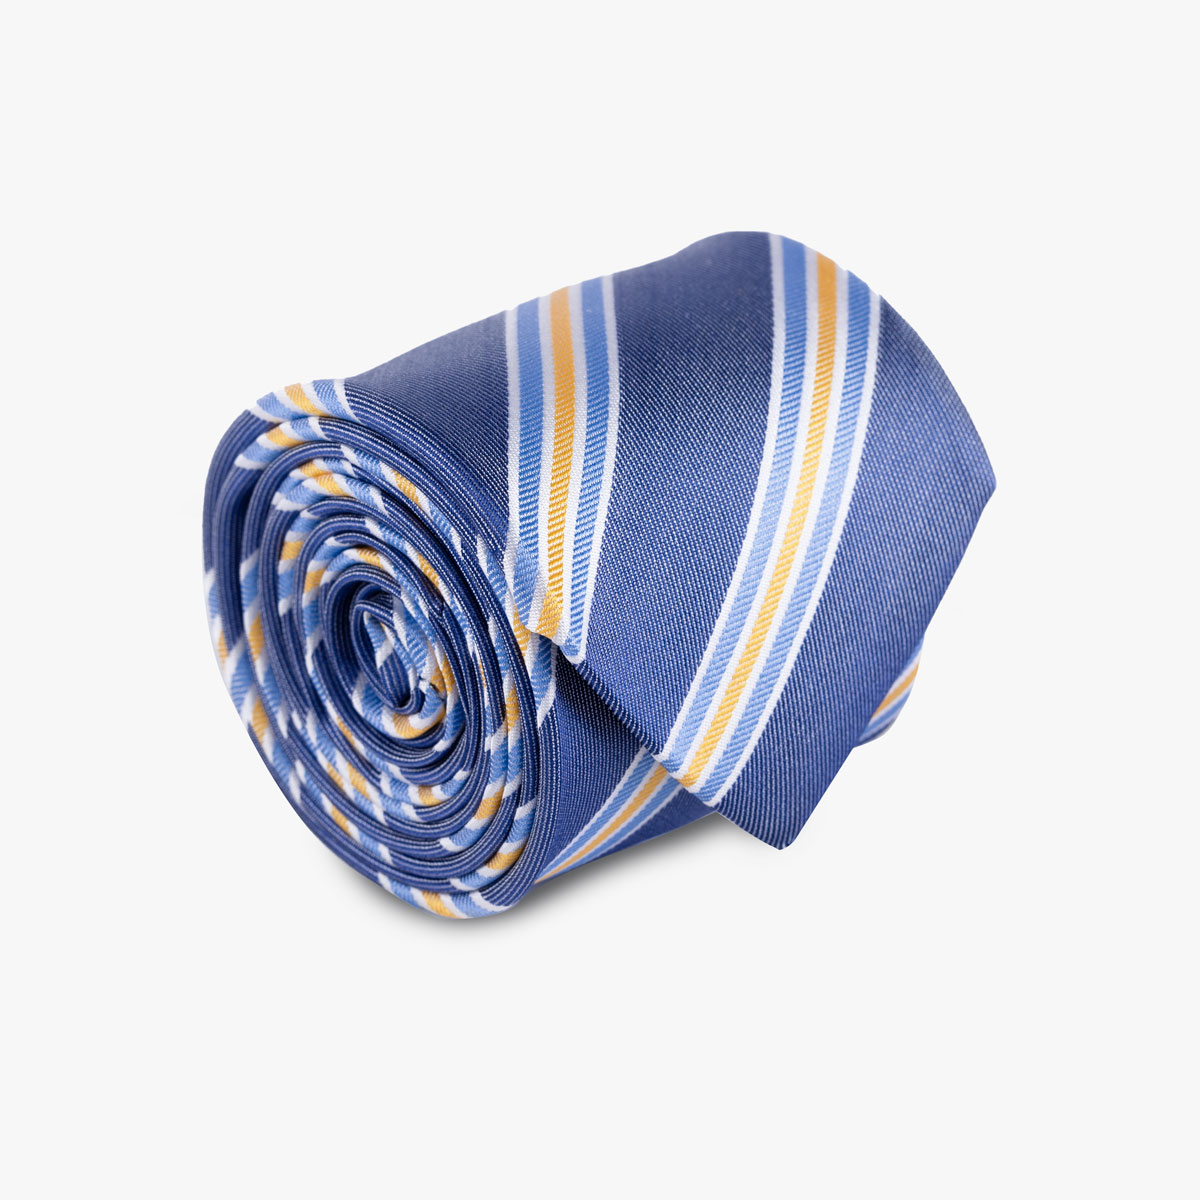 Krawatte aus Seide in dunkelblau mit hellen Streifen